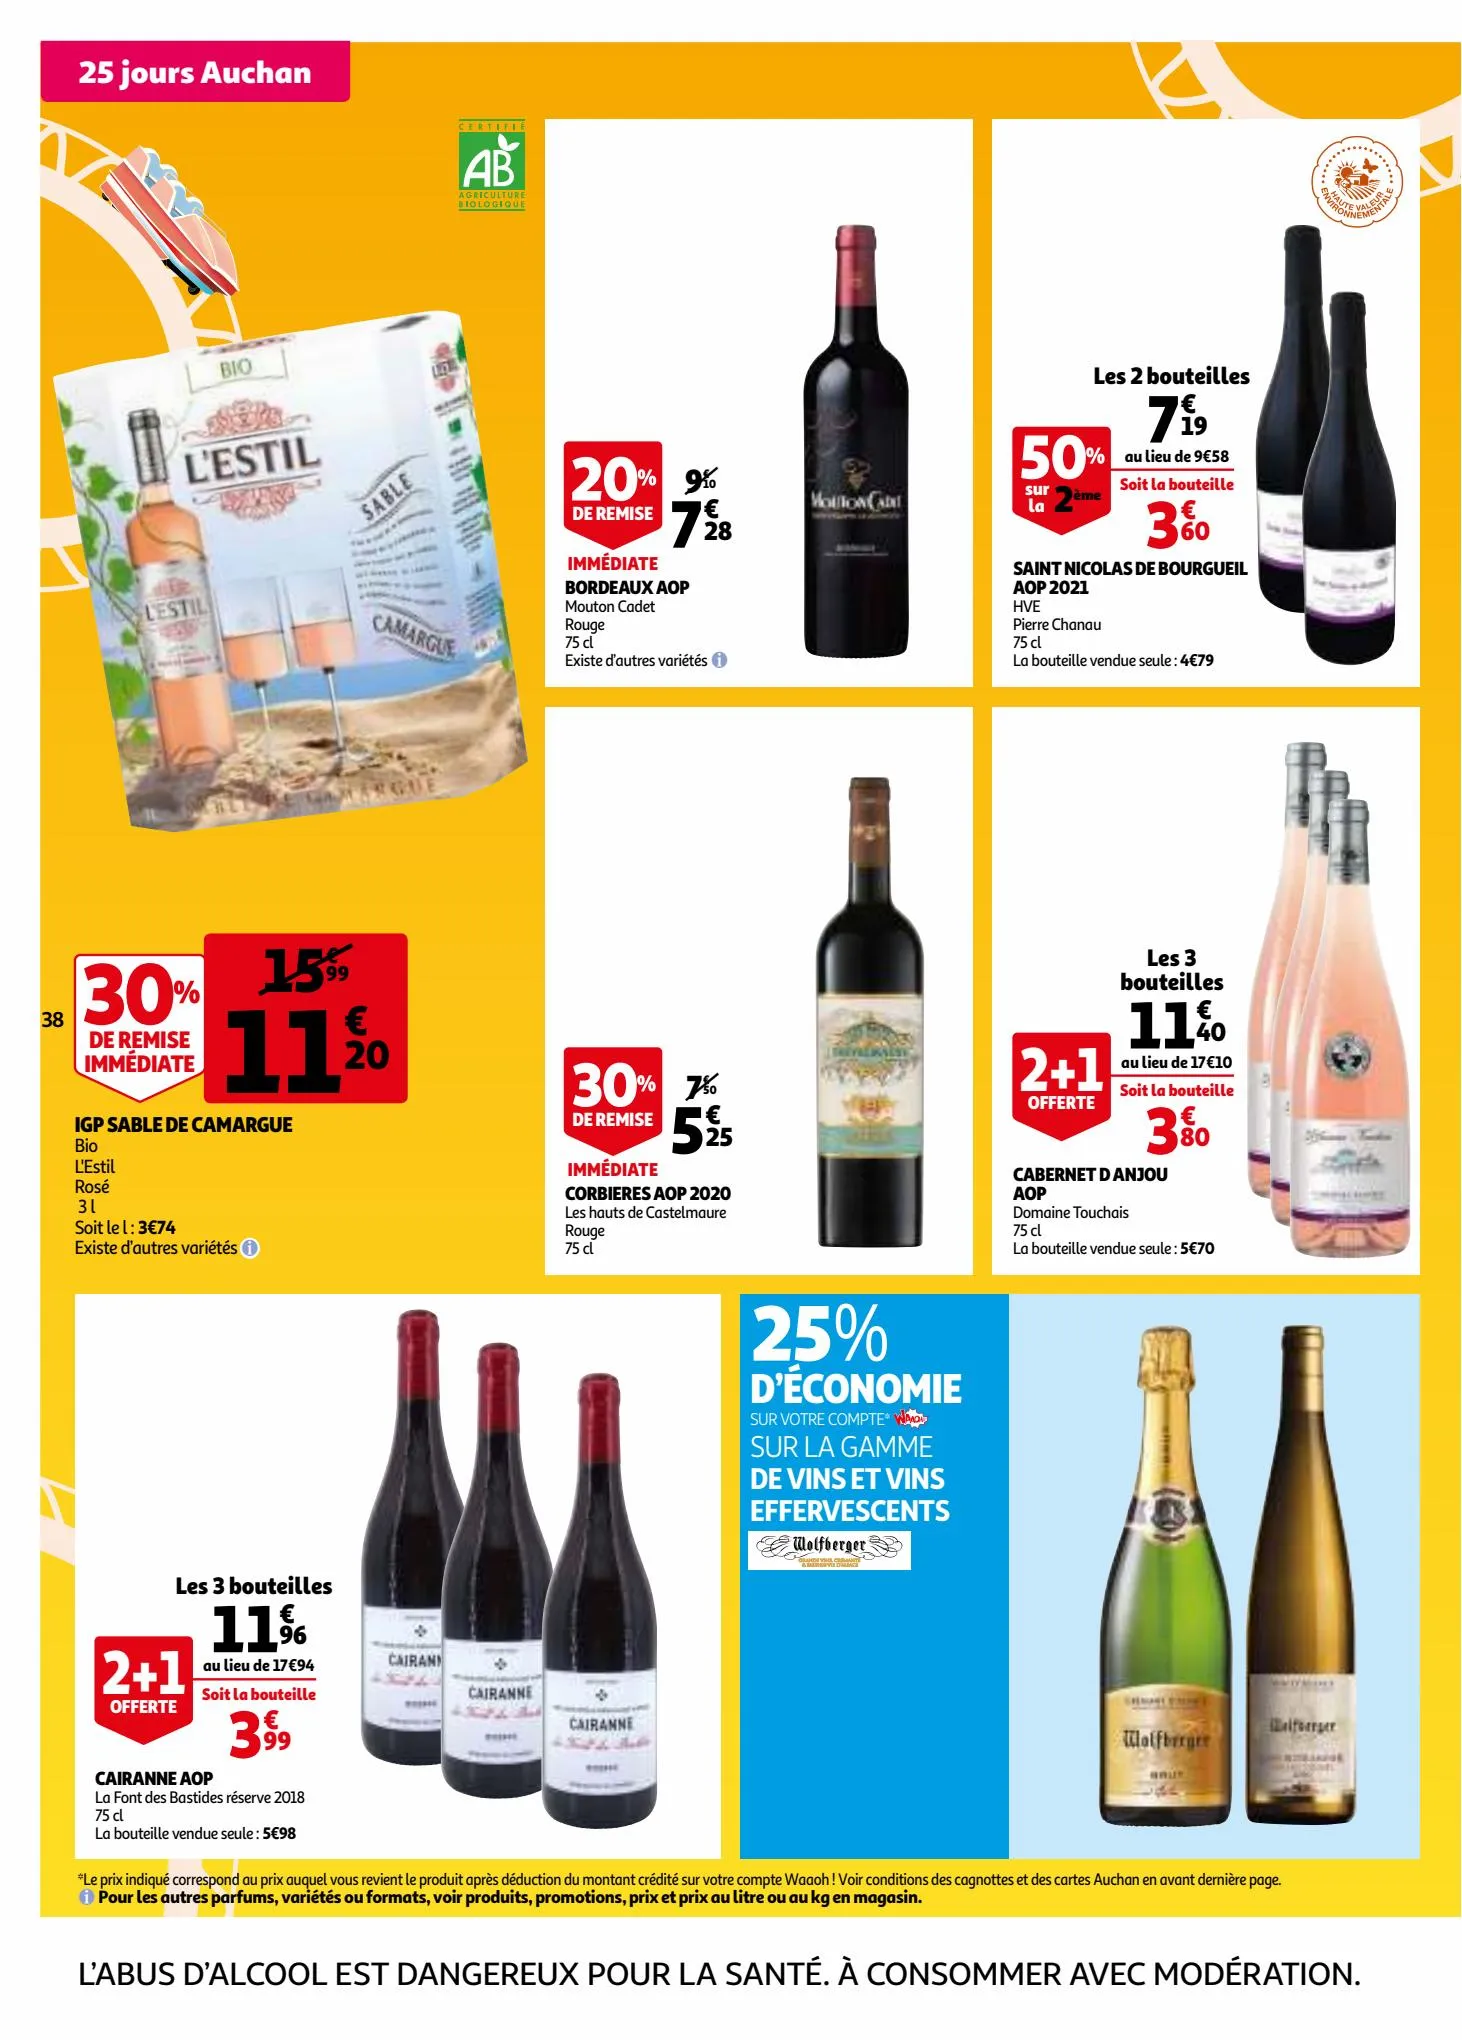 Catalogue 25 jours Auchan, page 00038